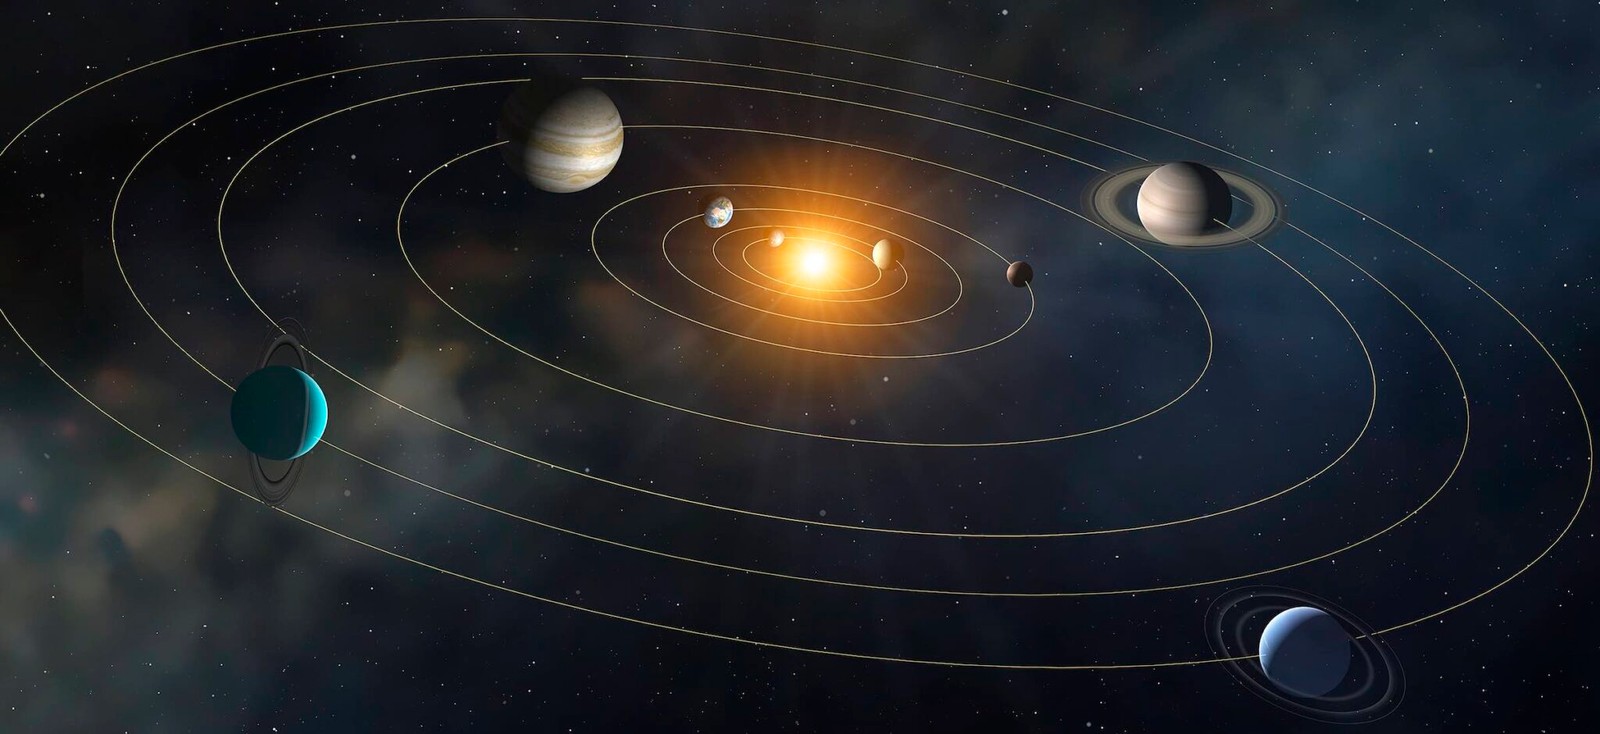 Ile razy Ziemia obróciła się wokół Słońca od początku istnienia?